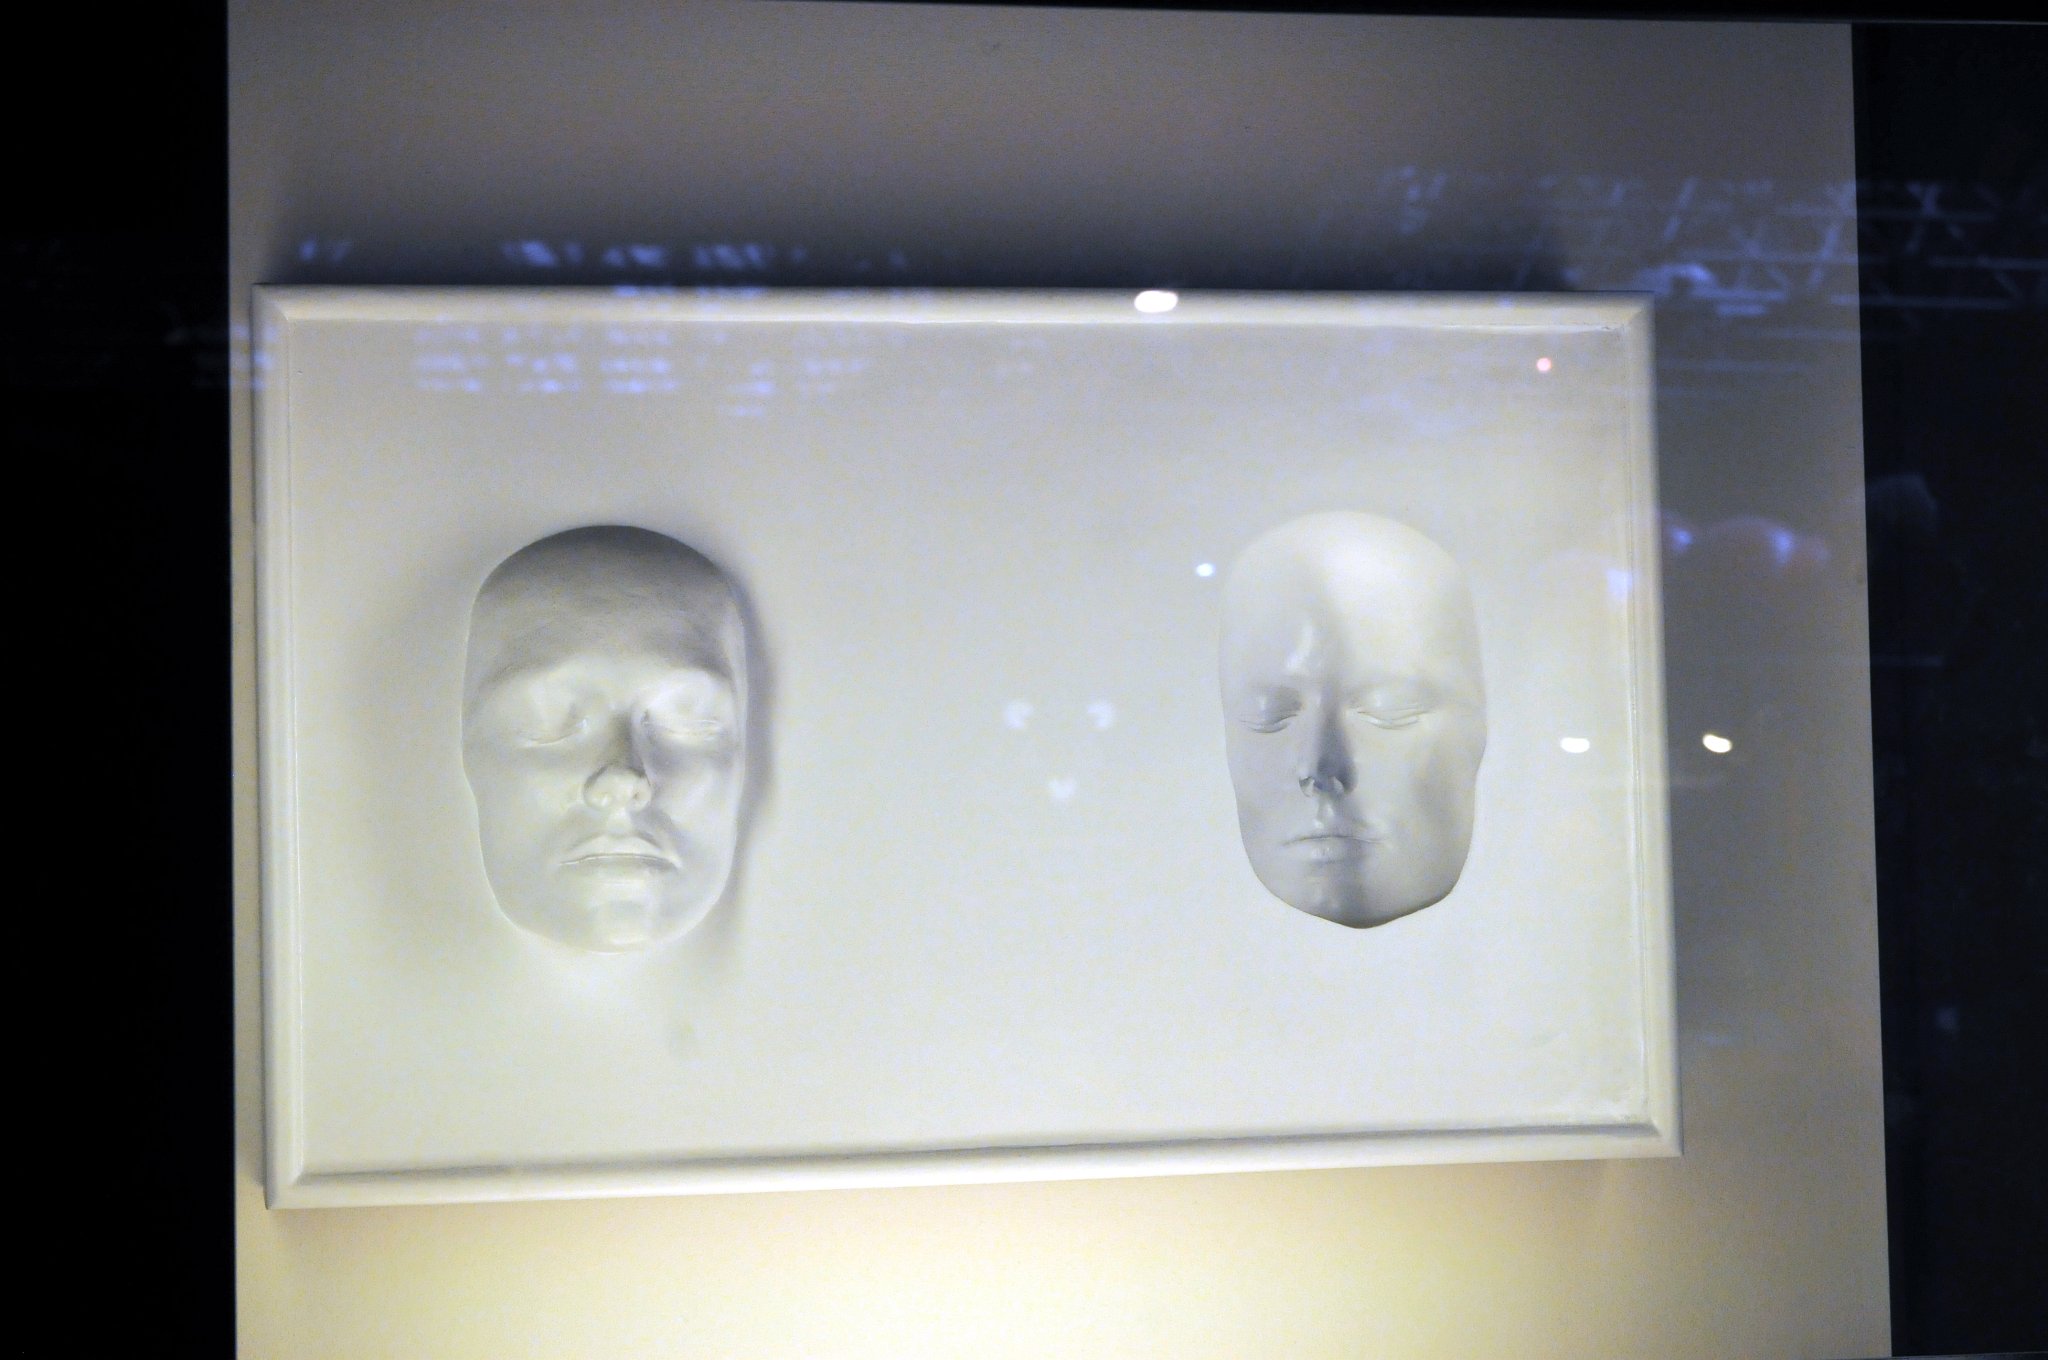 DSC_7373_1.jpg - Odlitky lidské tváře zobrazují optické klamy. Je maska v pravo vystupující nebo naopak vnořená do podkladu???